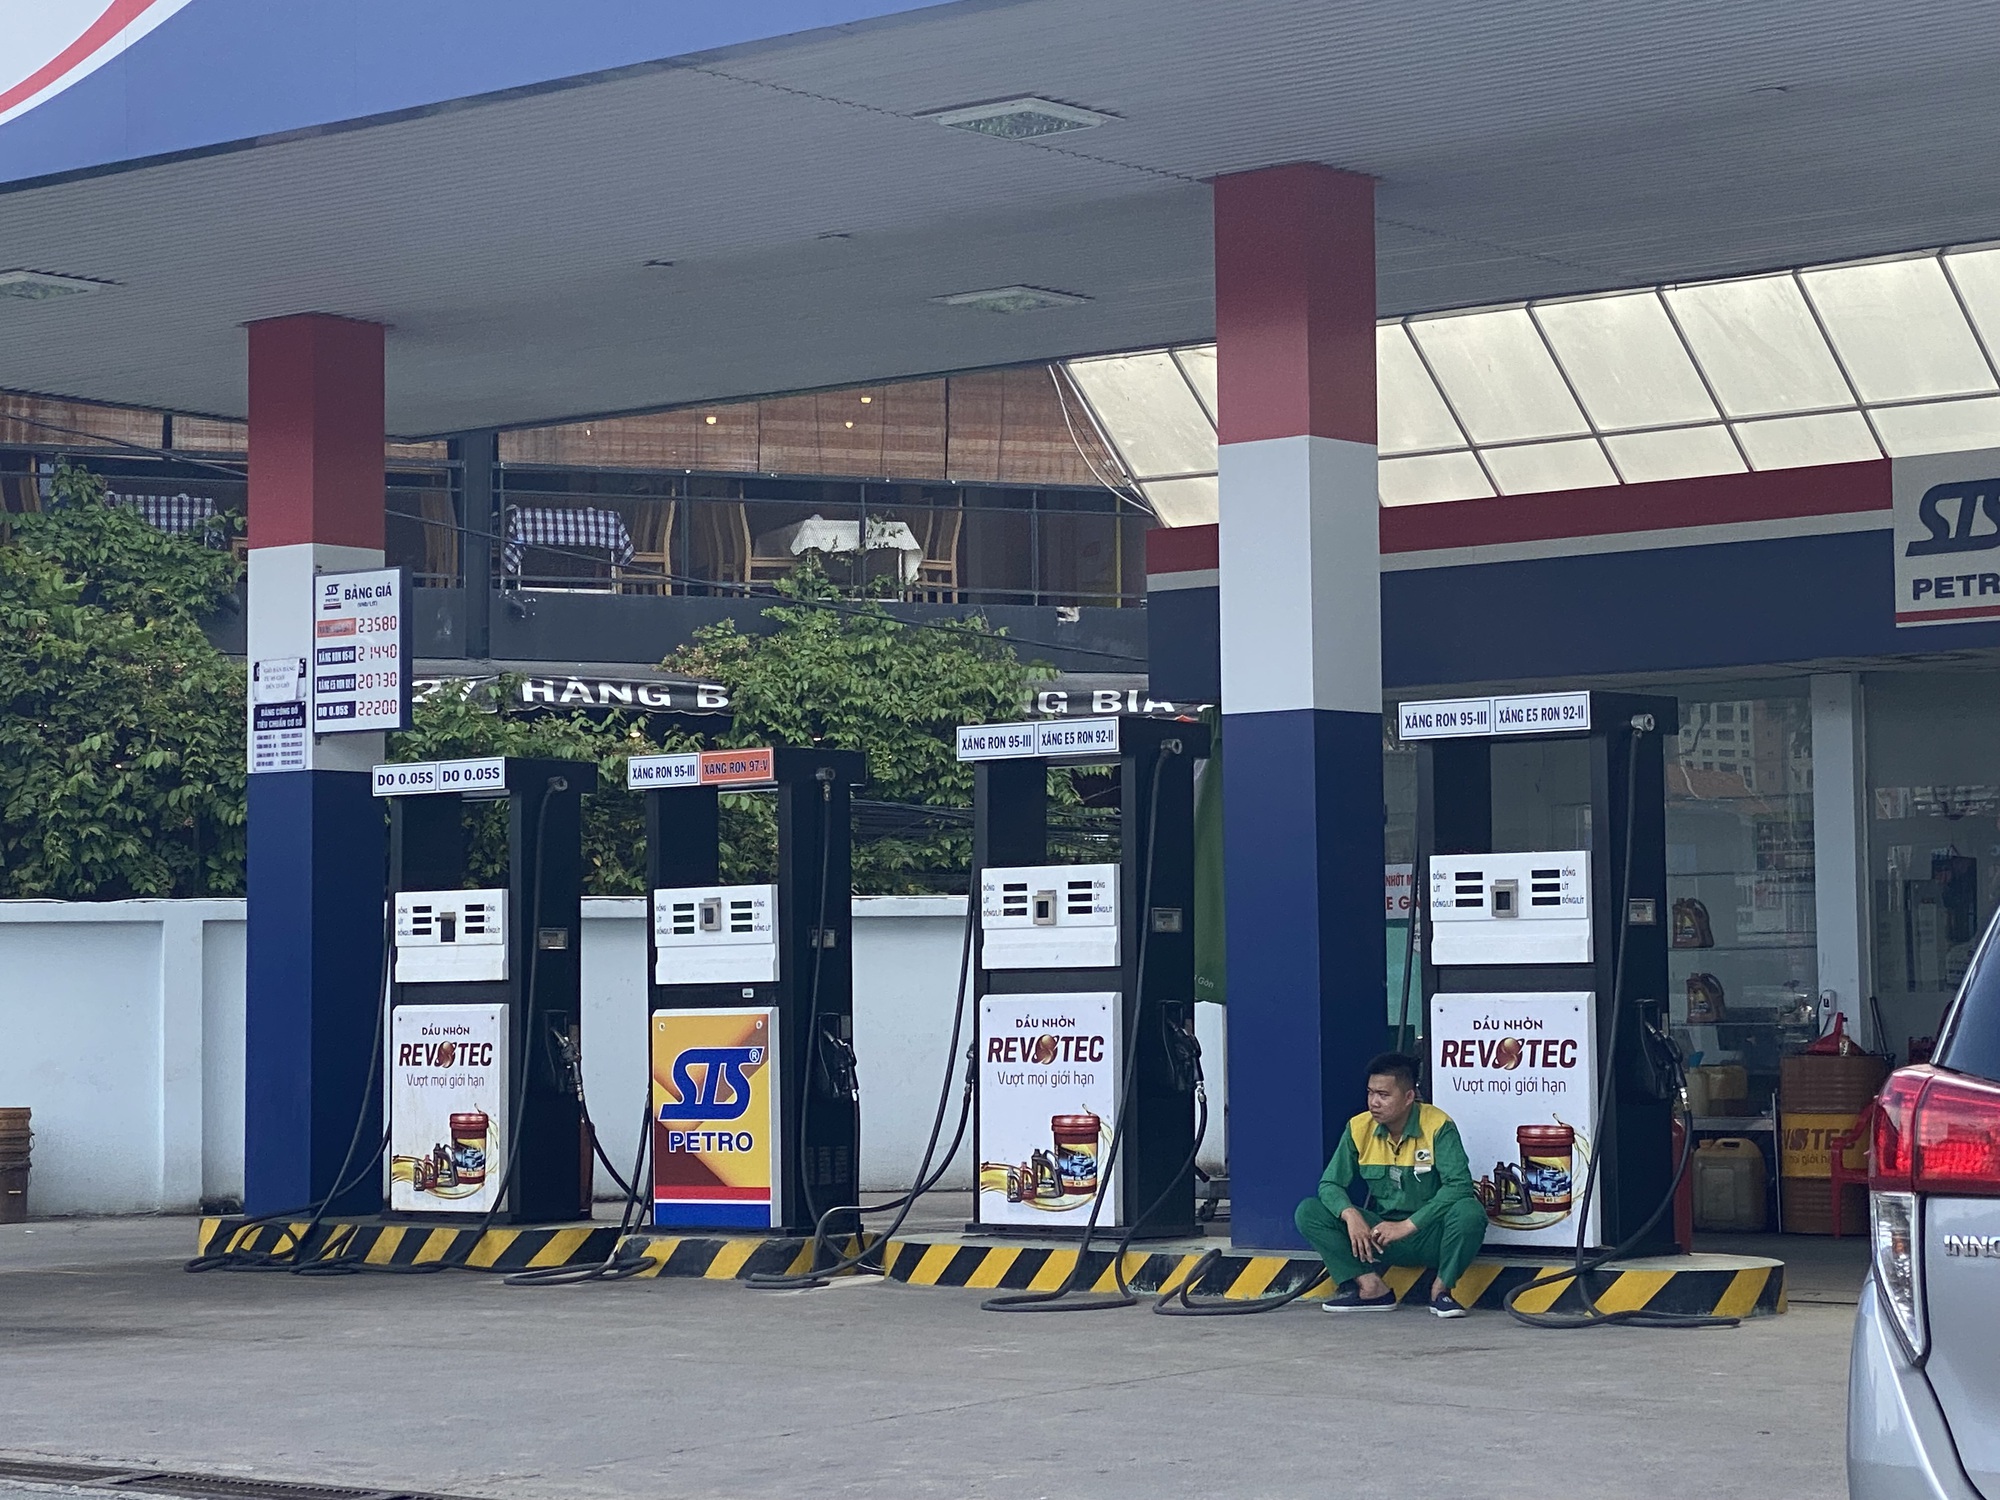 Danh sách 54 cây xăng tạm hết xăng ở TP HCM - Báo Người lao động